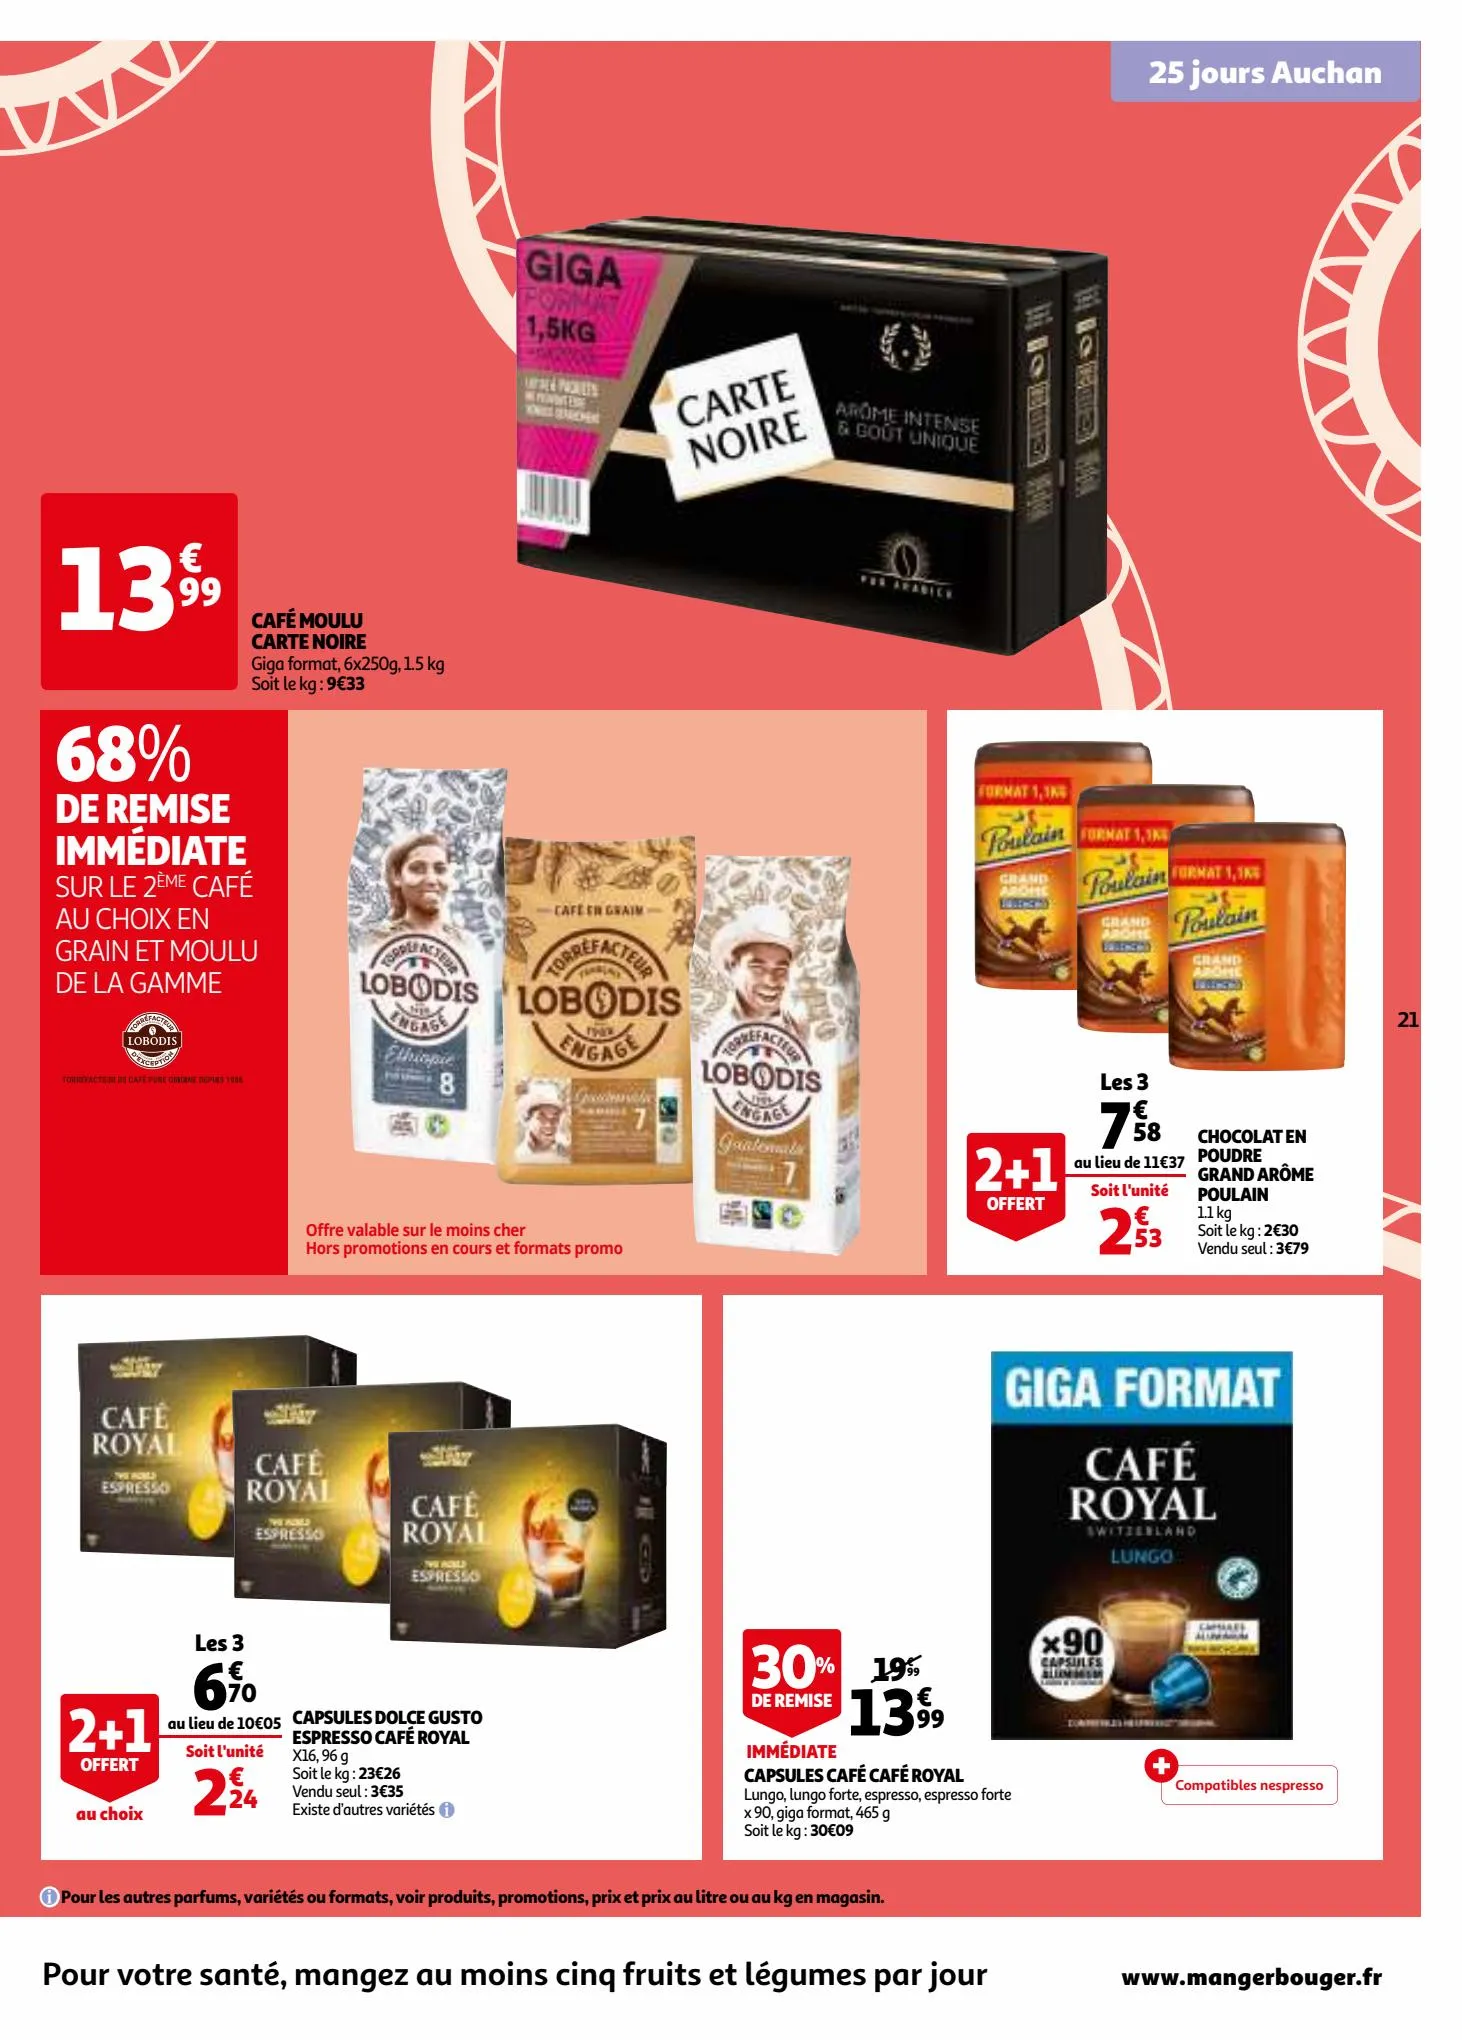 Catalogue 25 jours Auchan, page 00021